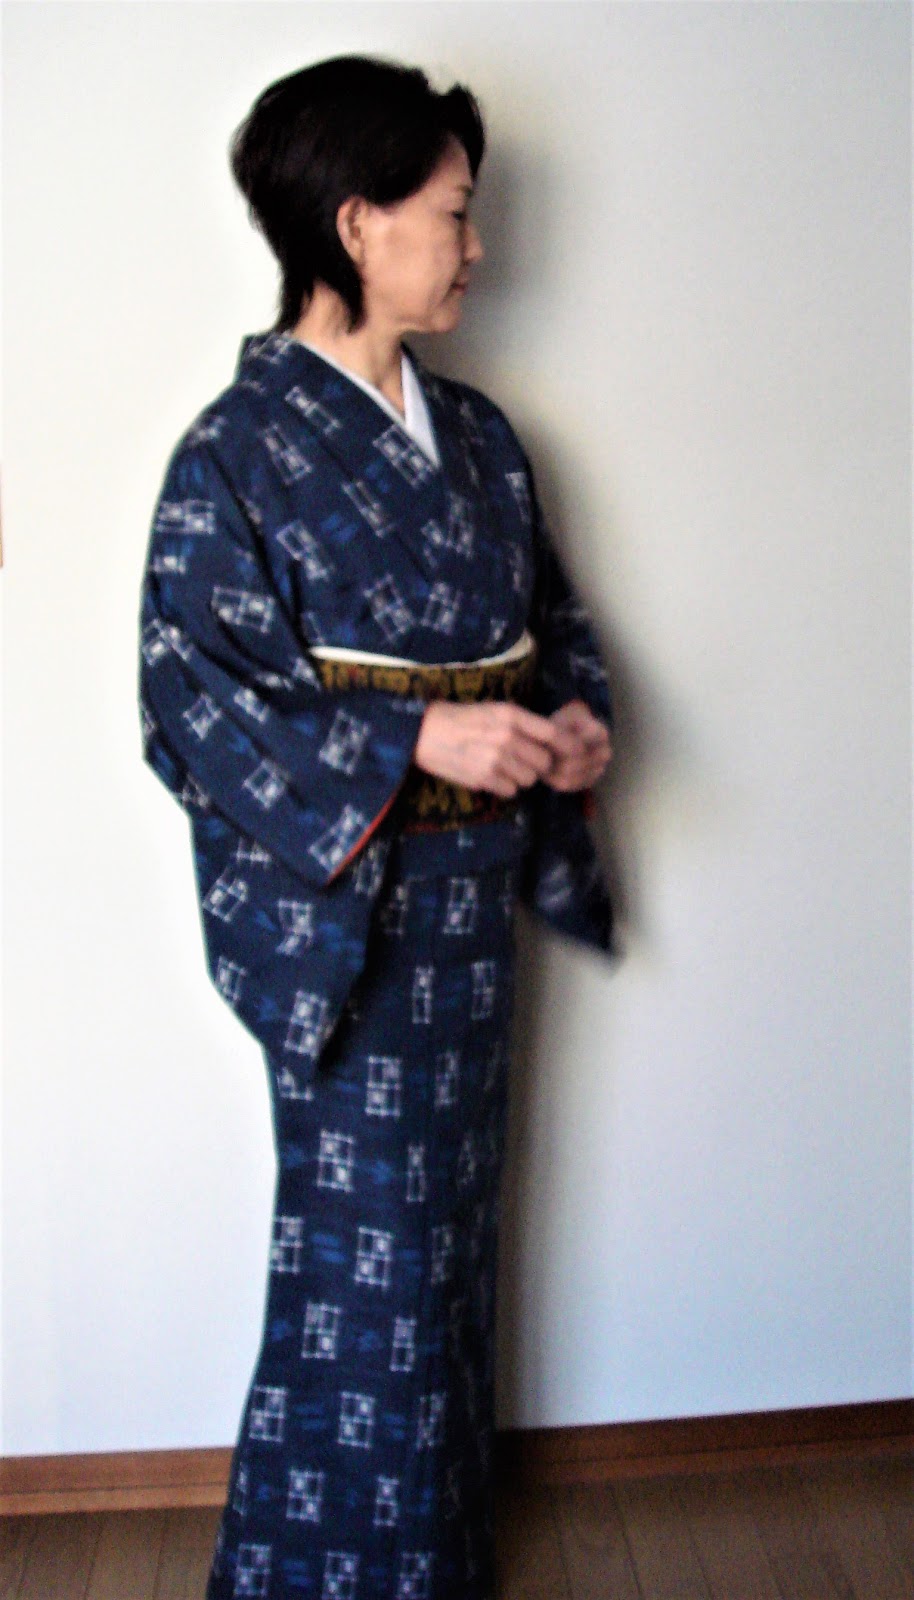 絣の着物 居酒屋コ デ 琉球絣の着物にイカットの二部式名古屋帯 50代60代の普段着物 母の着物からハッピーライフ